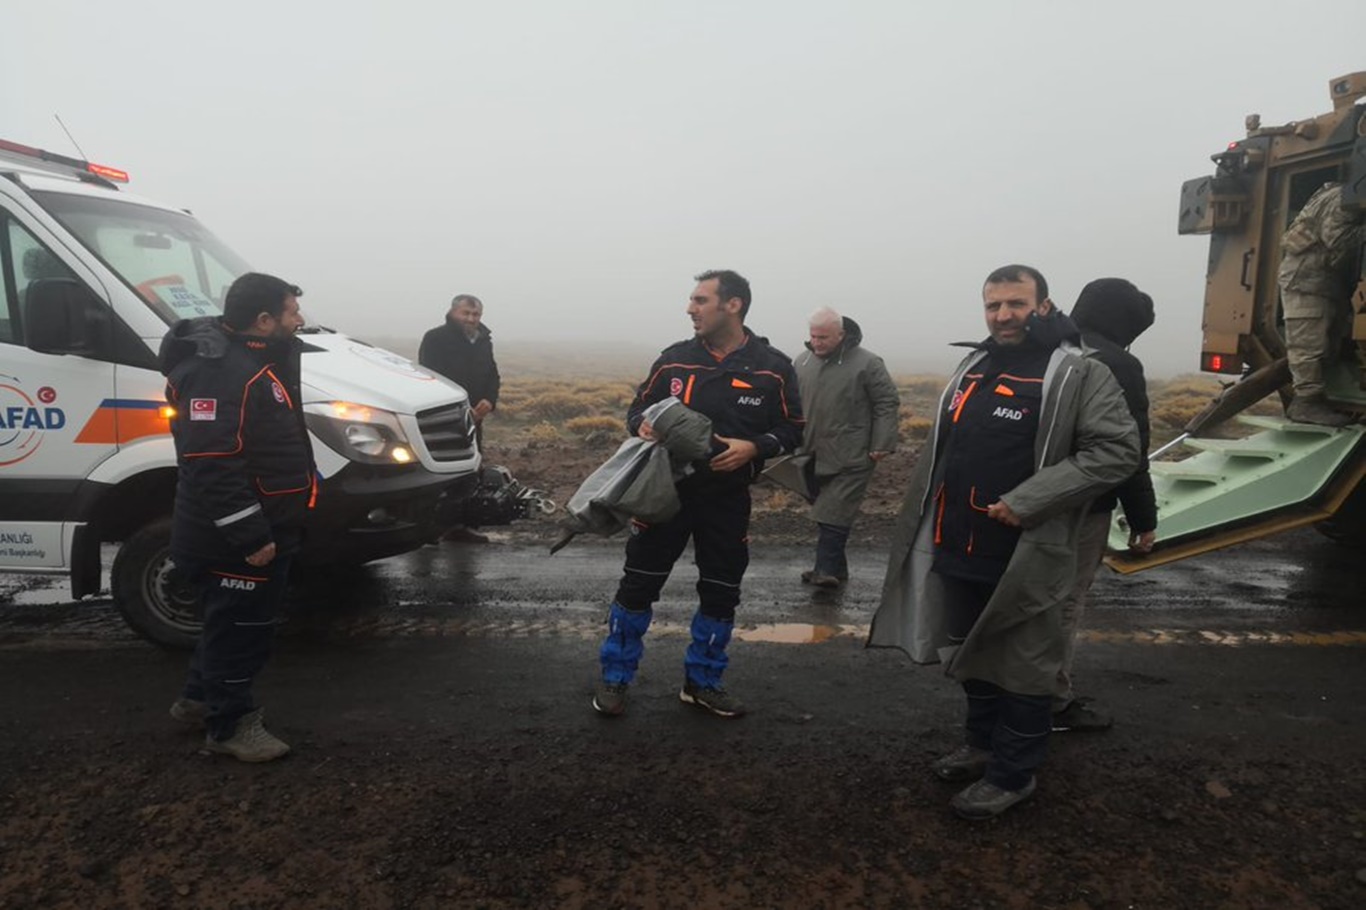 diyarbakirda-mantar-toplamaya-giderken-kaybolan-cocuk-bulundu-1.jpg